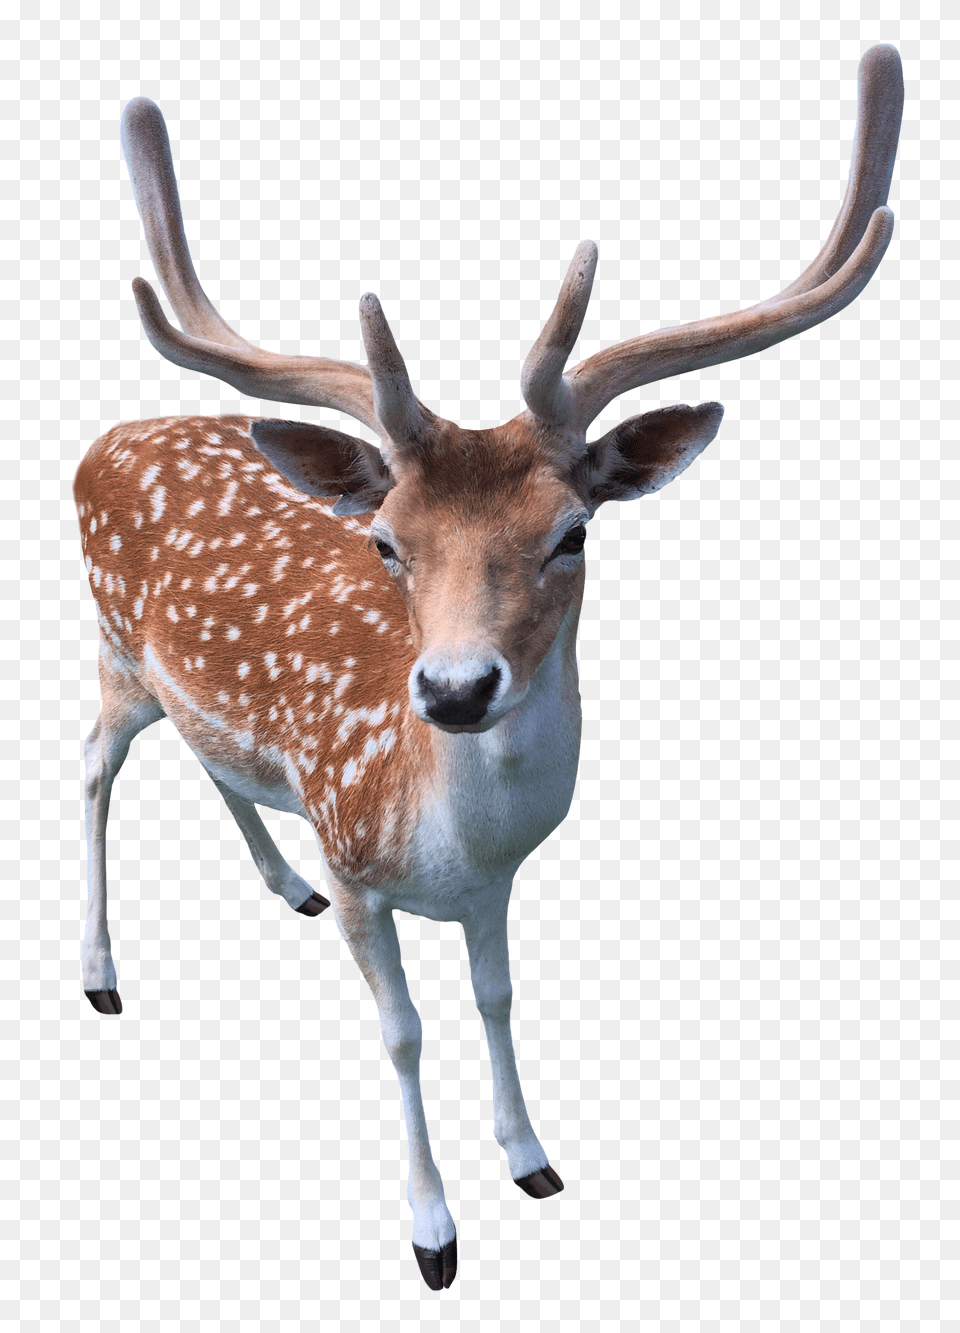 Images Deer Transparent Animal, Antelope, Mammal, Wildlife Png Image